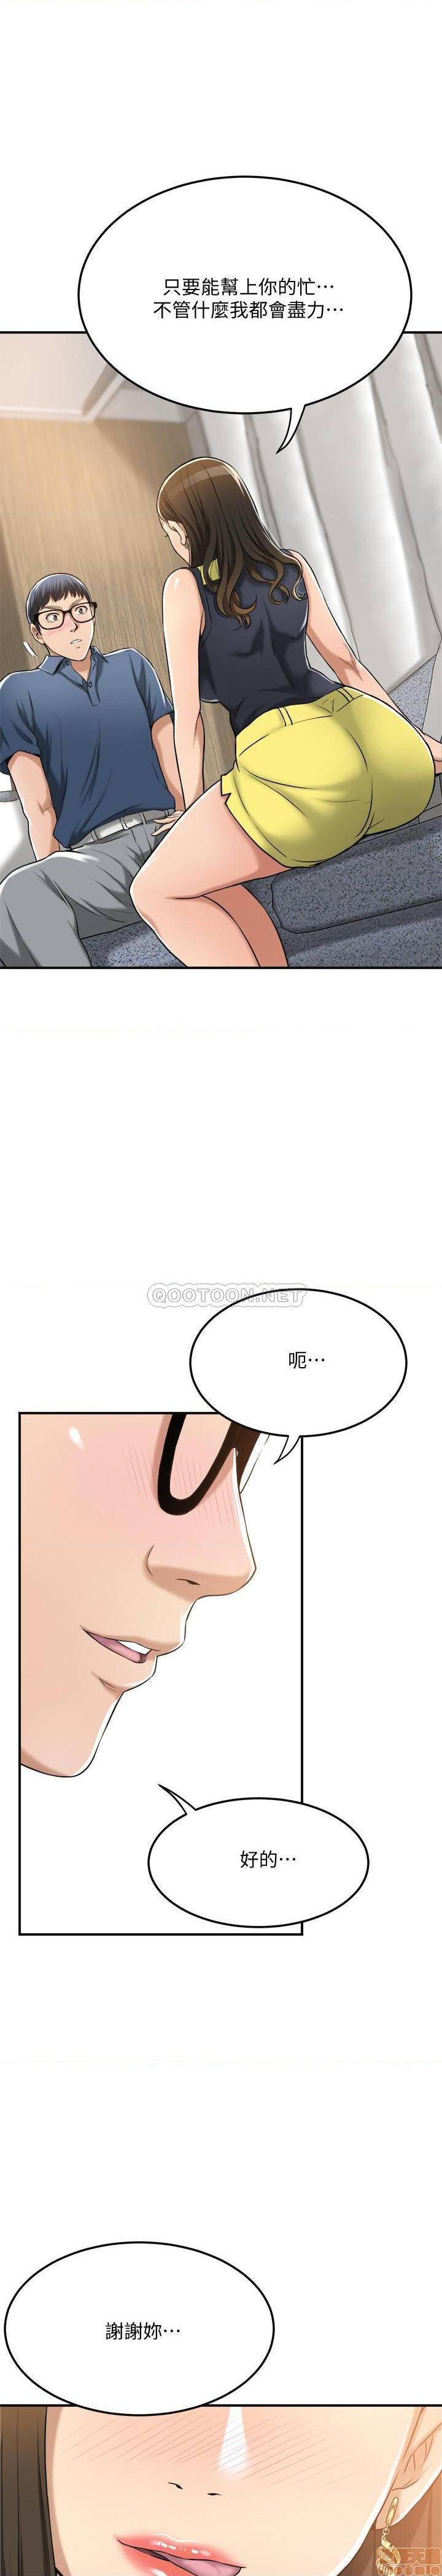 《抑欲人妻》漫画 第23话 - 疯狂抽插筱妍的诱人胴体